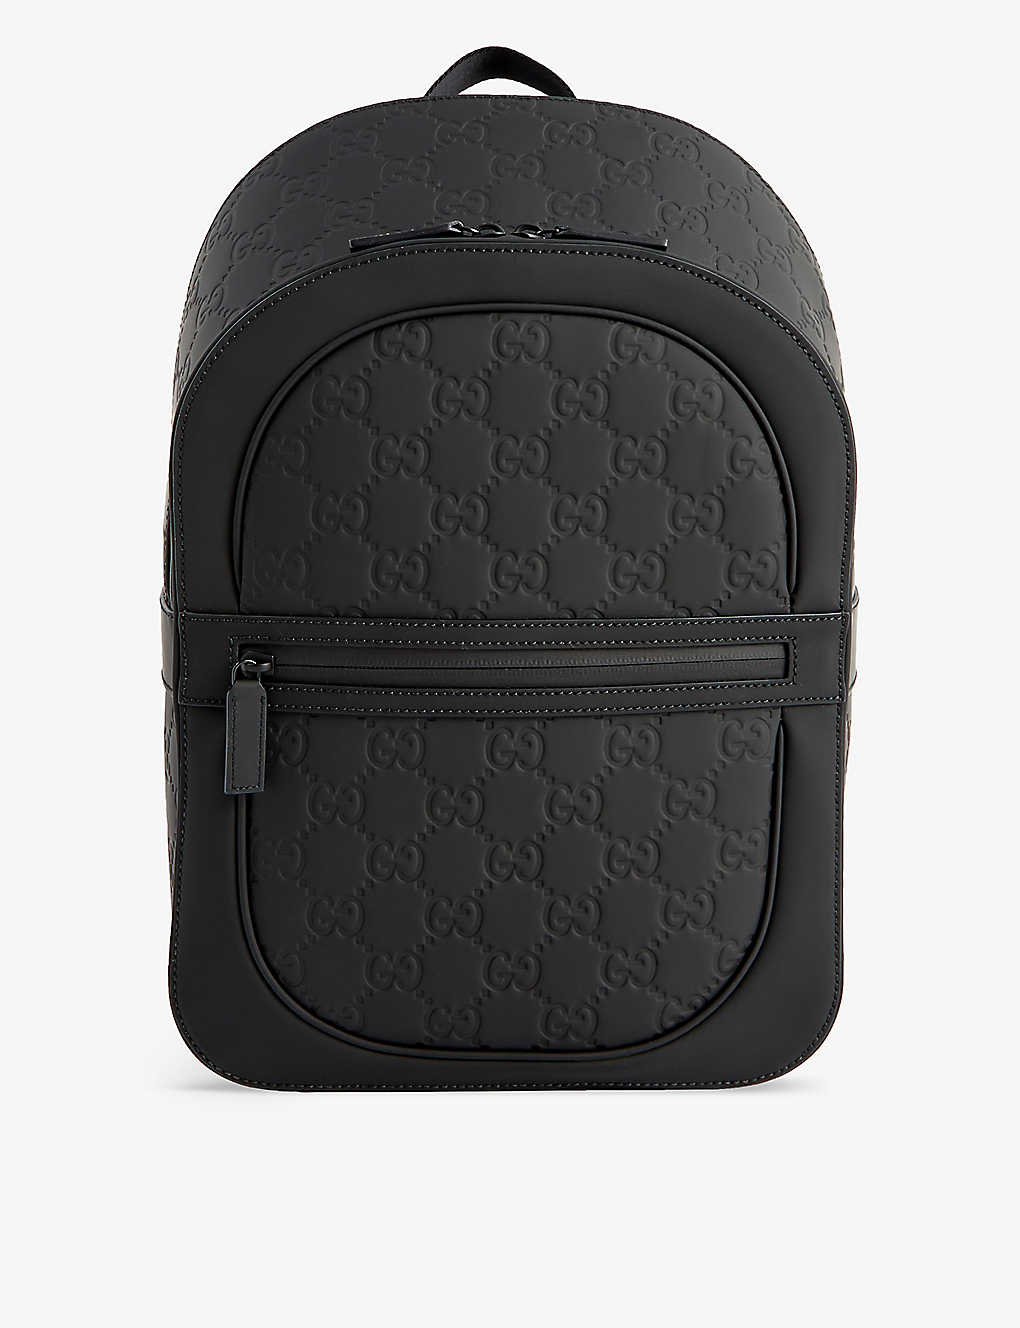 Gucci Gg Logo-debossed Leather Backpack In Black/blk/blk/blk